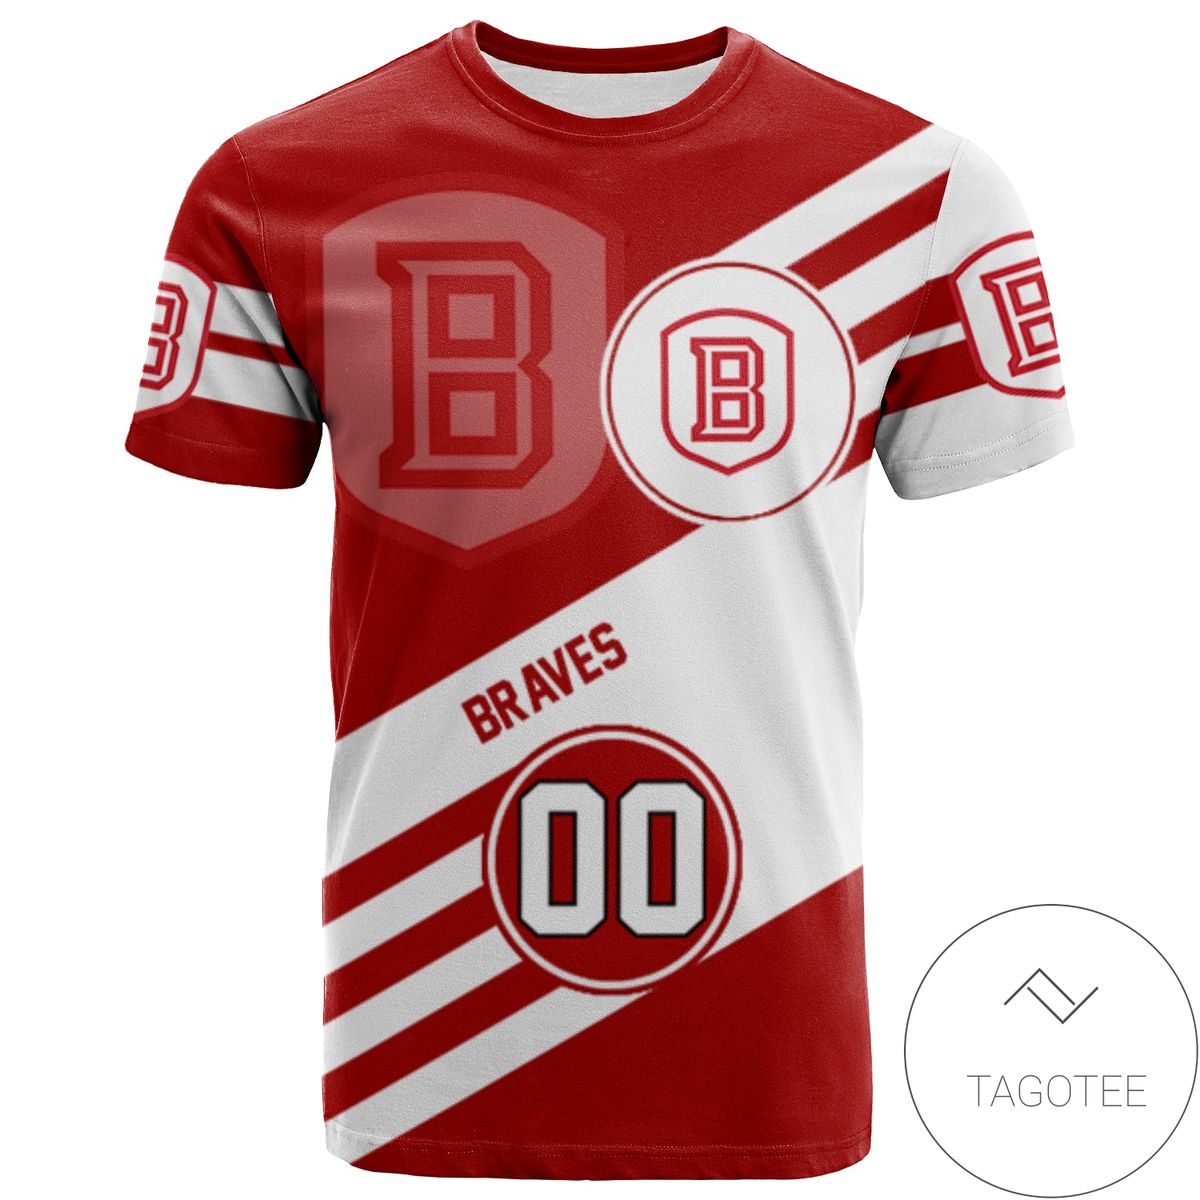 Bradley Braves All Over Print T-Shirt Sport Style Logo - NCAA